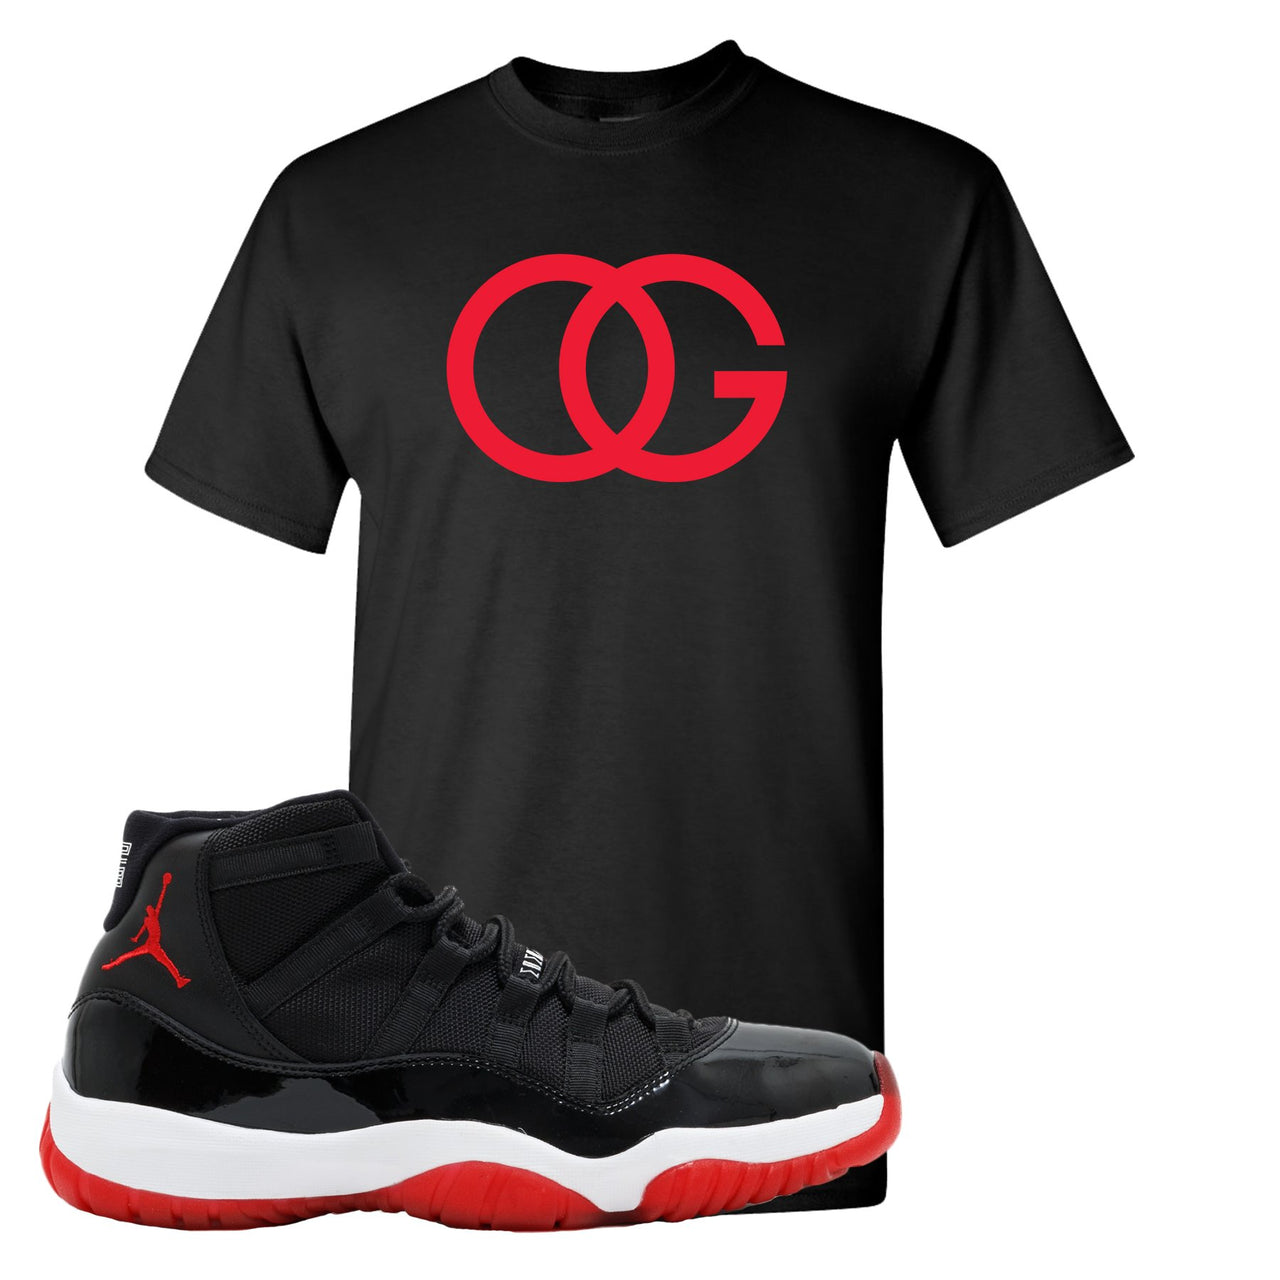 Jordan 11 Bred OG Black Sneaker Hook Up T-Shirt